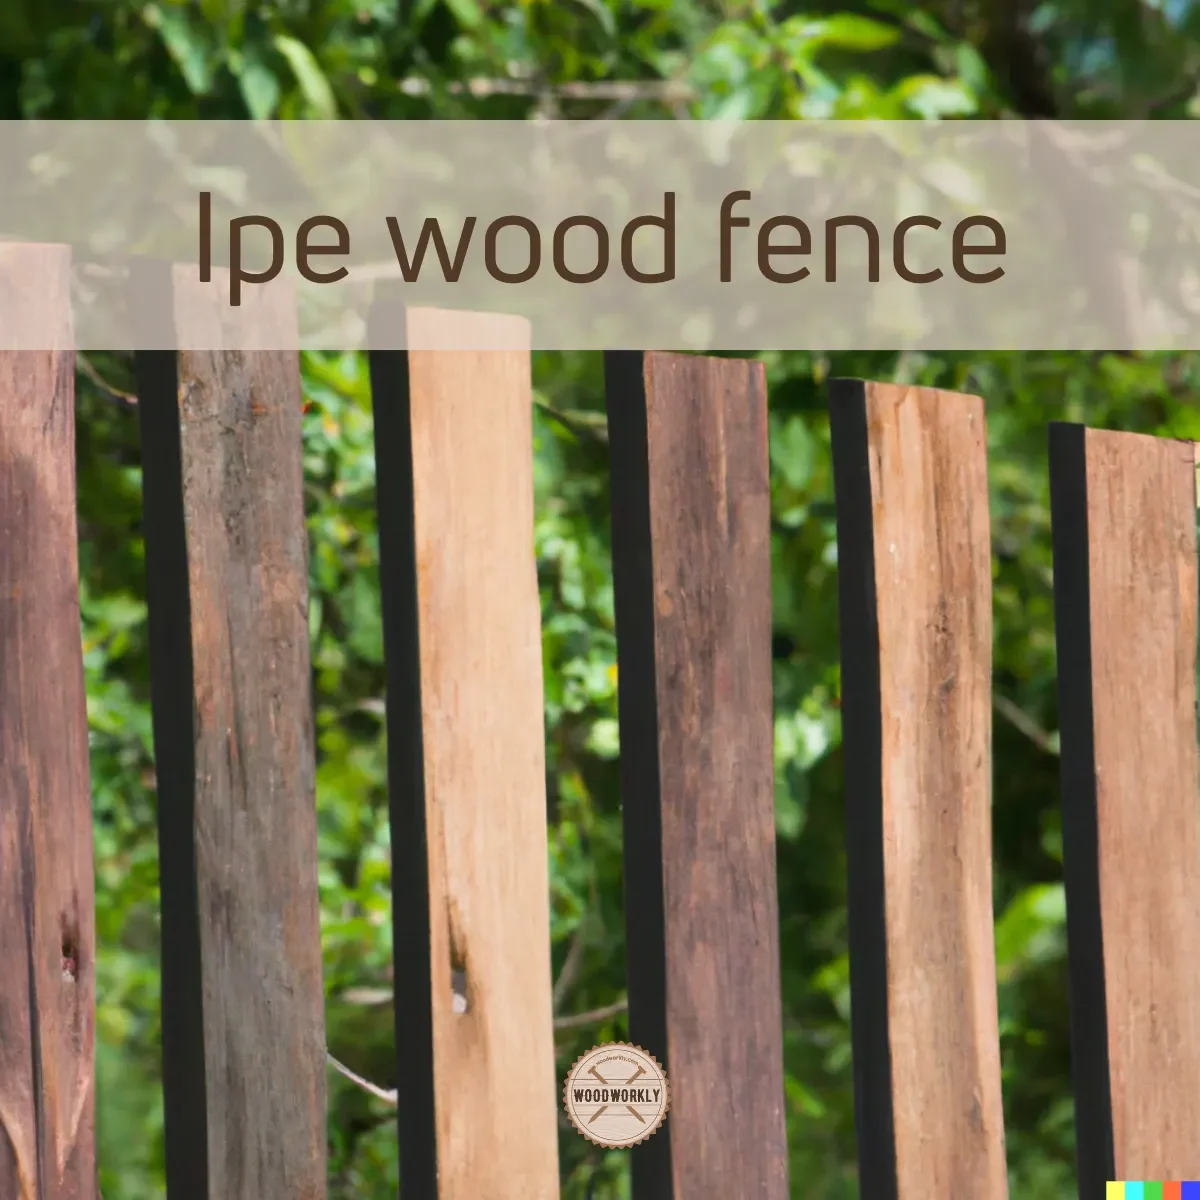 Ipe wood fence